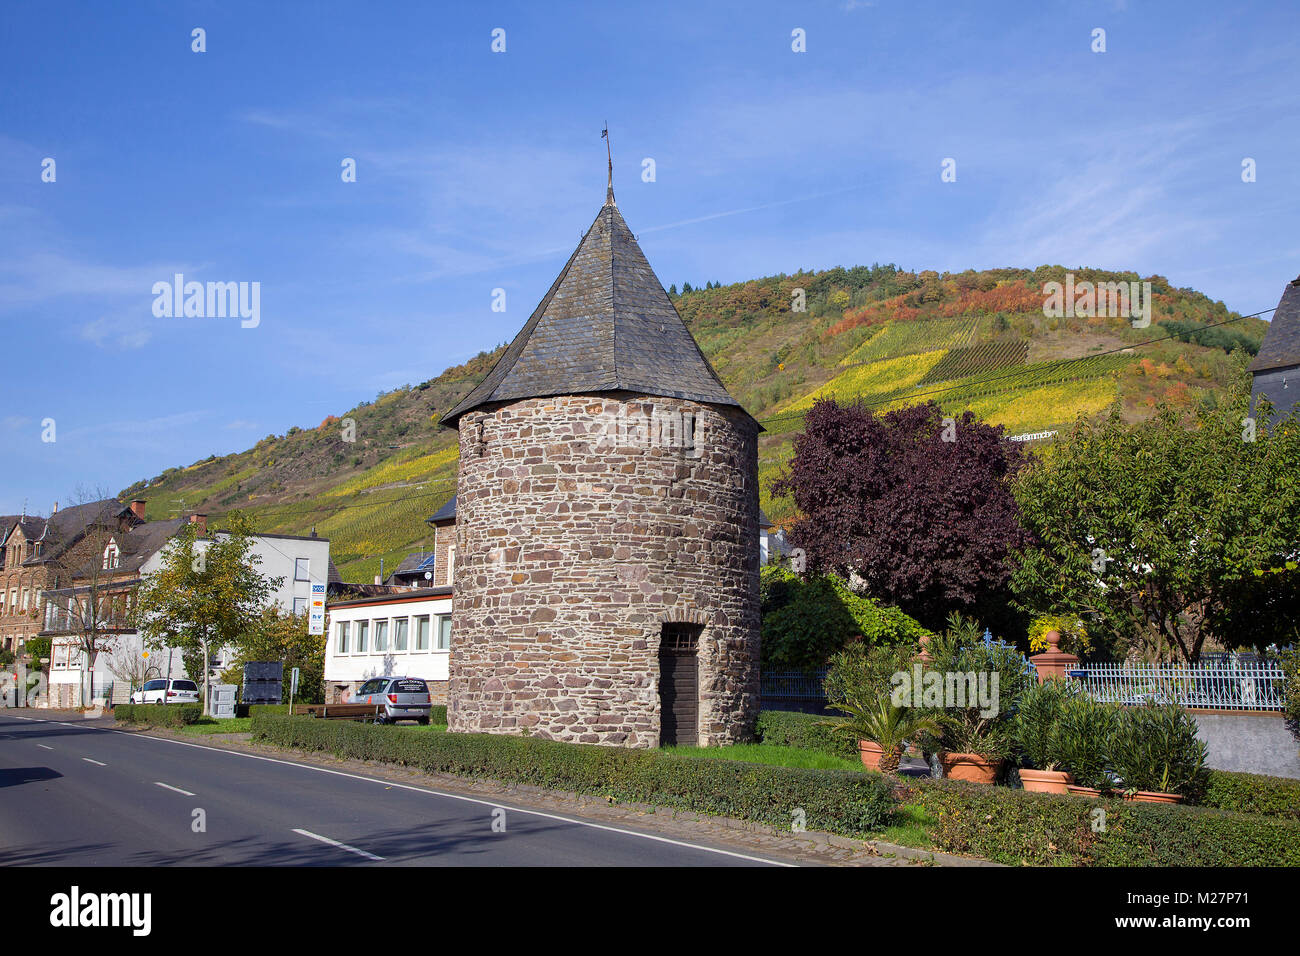 Historischen mittelalterlichen Wachturm im Weinort Ediger-Eller, Mosel, Rheinland-Pfalz, Deutschland, Europa Stockfoto